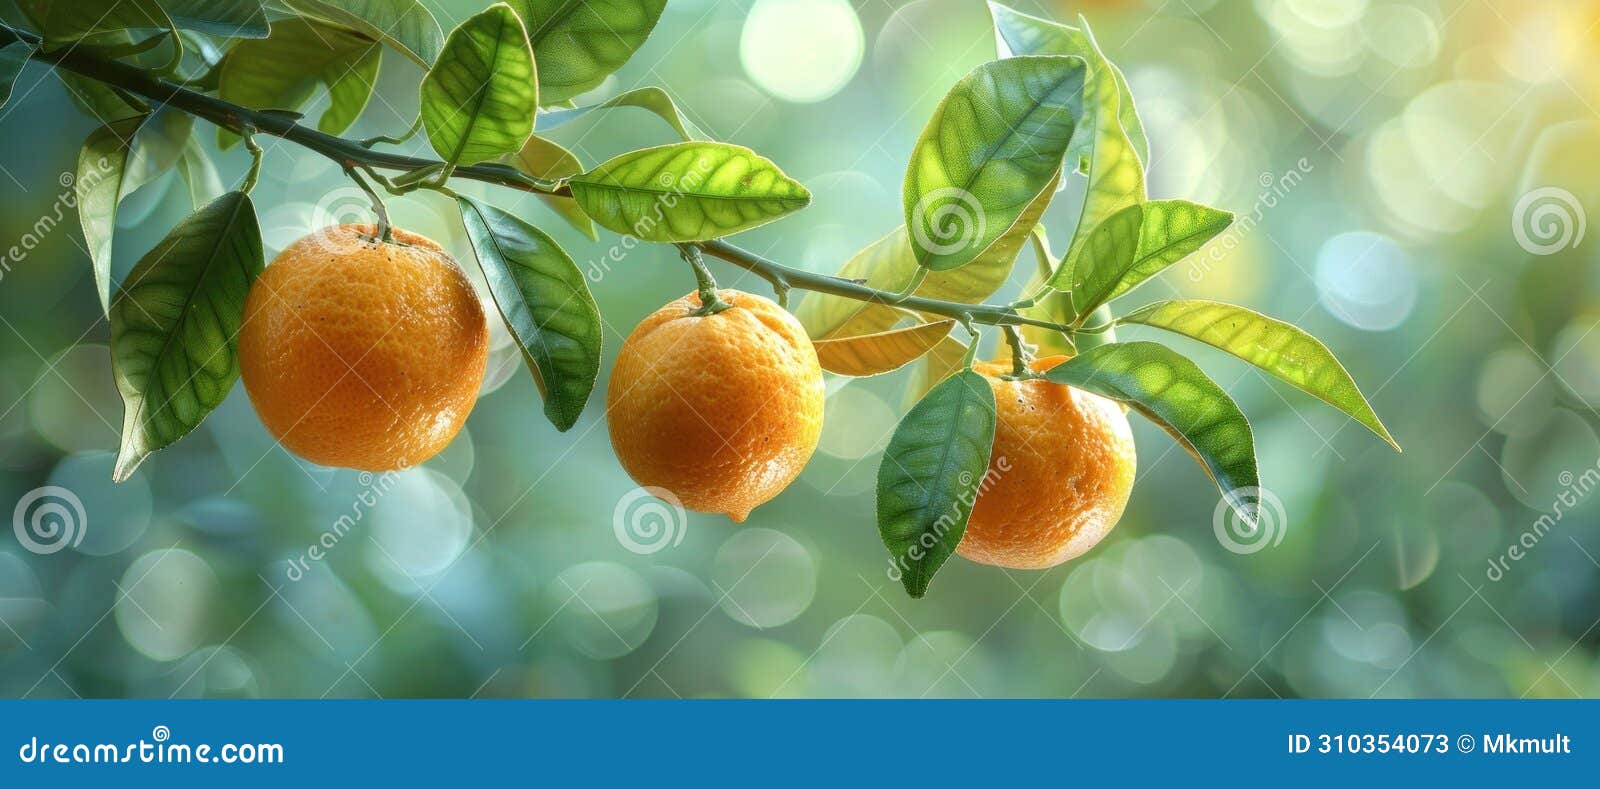 citrus lucida branch with hanging oranges